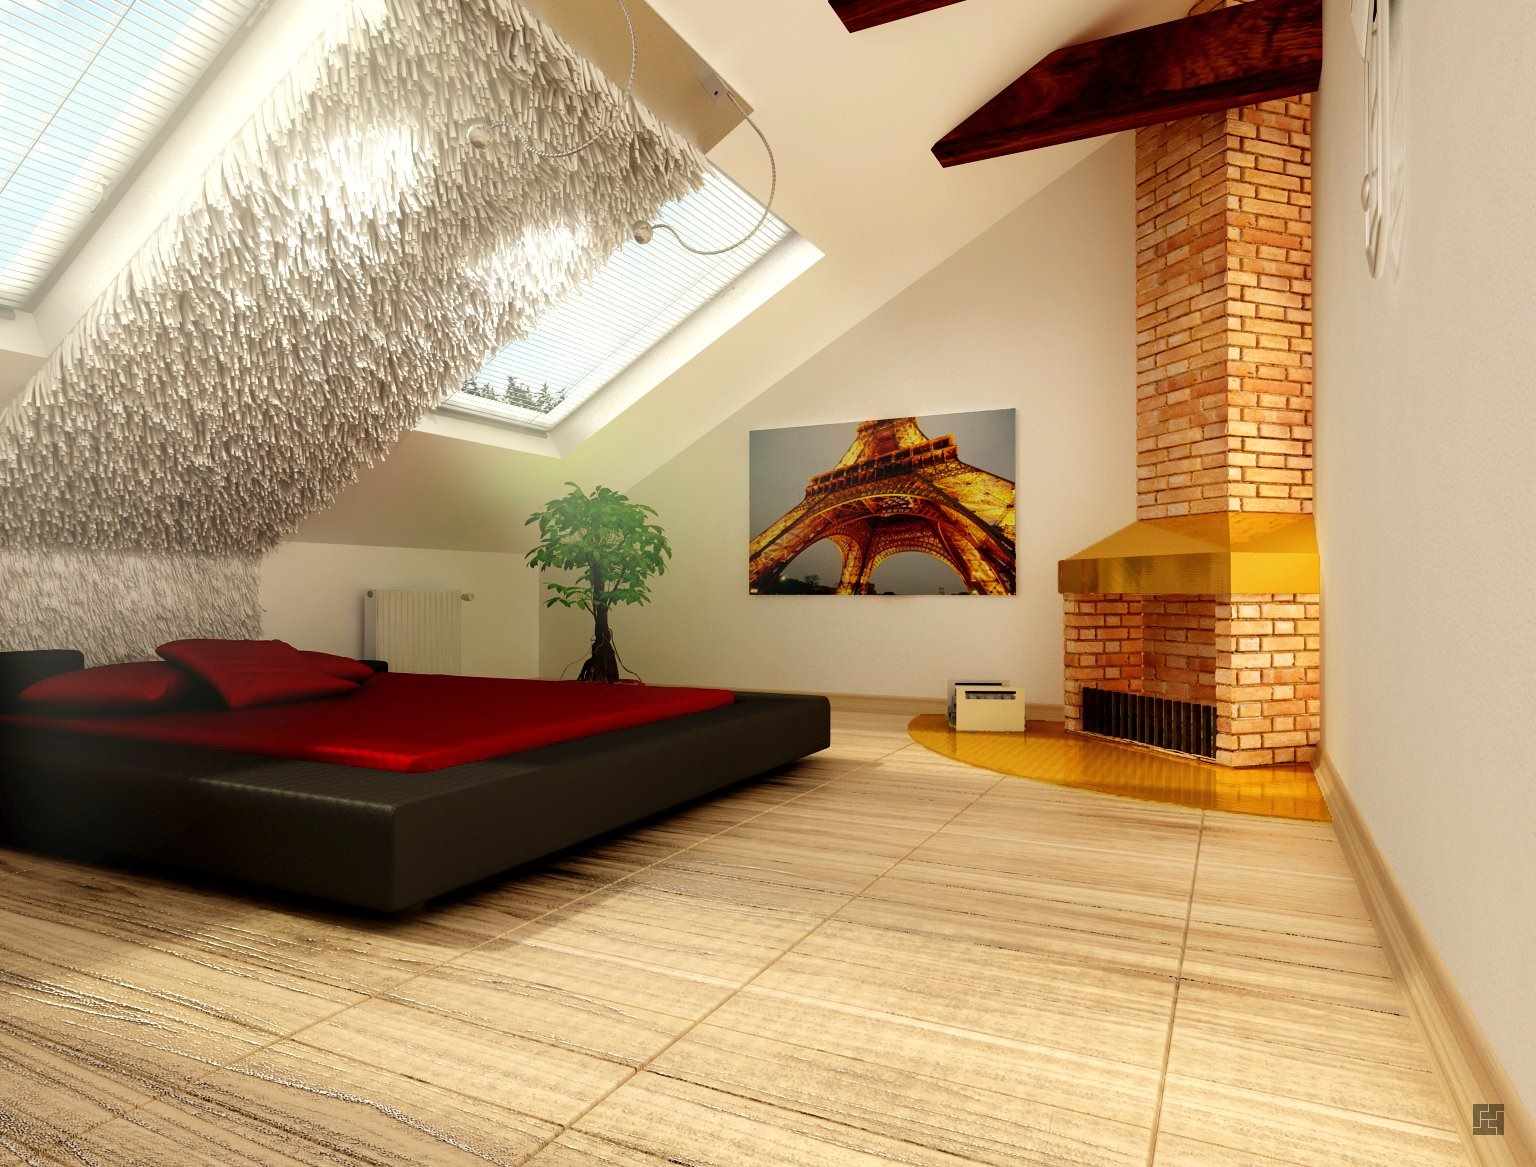 Спальня на мансарде со скошенным потолком: фото, дизайн интерьера, освещение - стильный и современный дизайн интерьера для вас